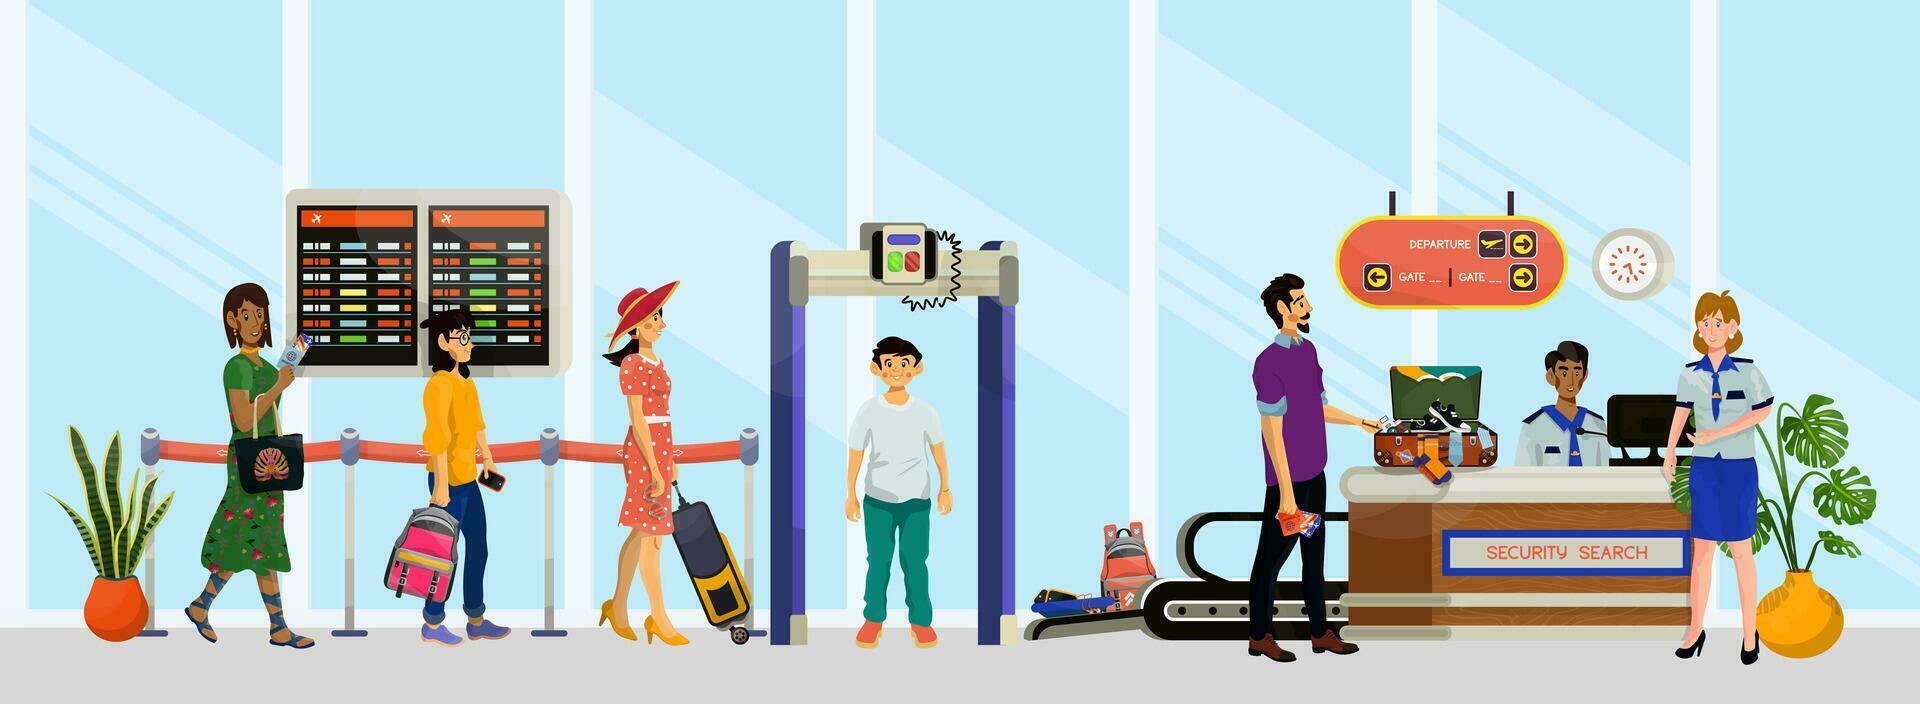 vector ilustración de escritorio de seguridad buscar con inspector y pasajeros o turistas en aeropuerto.